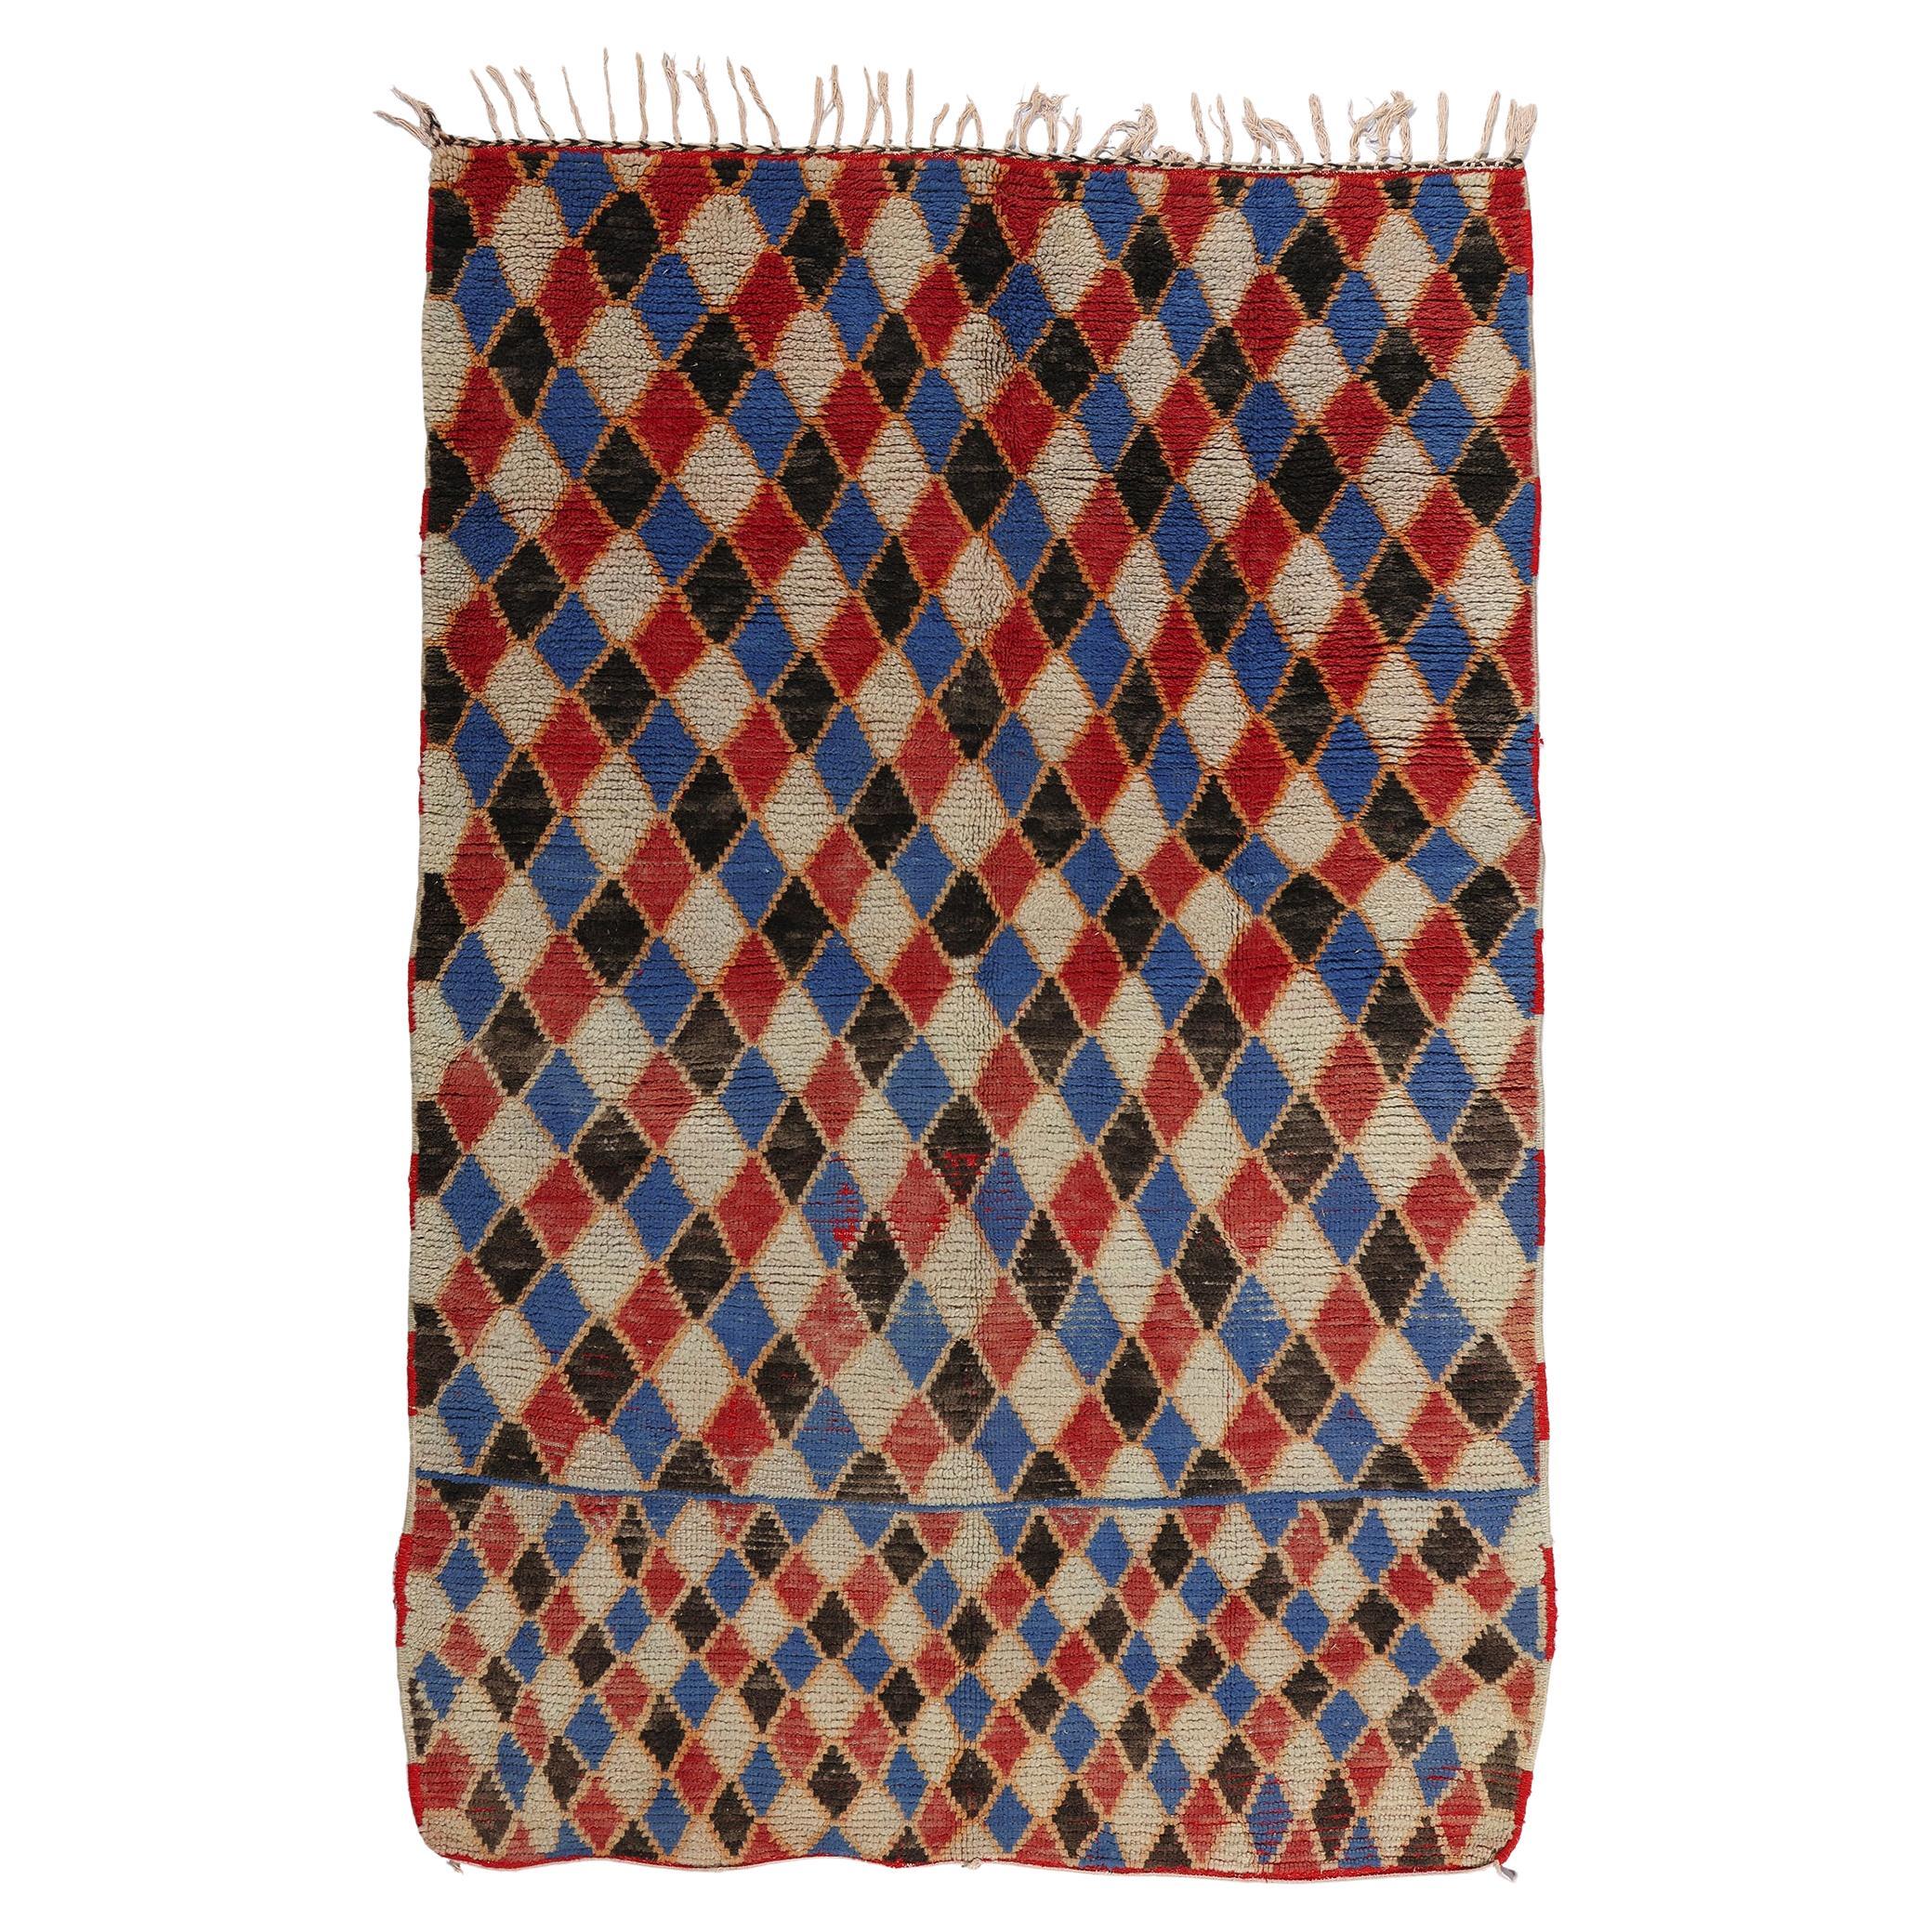 Marokkanischer Azilal-Teppich im Vintage-Stil mit Harlekin, Maximalismus-Stil, Nomaden-Charm